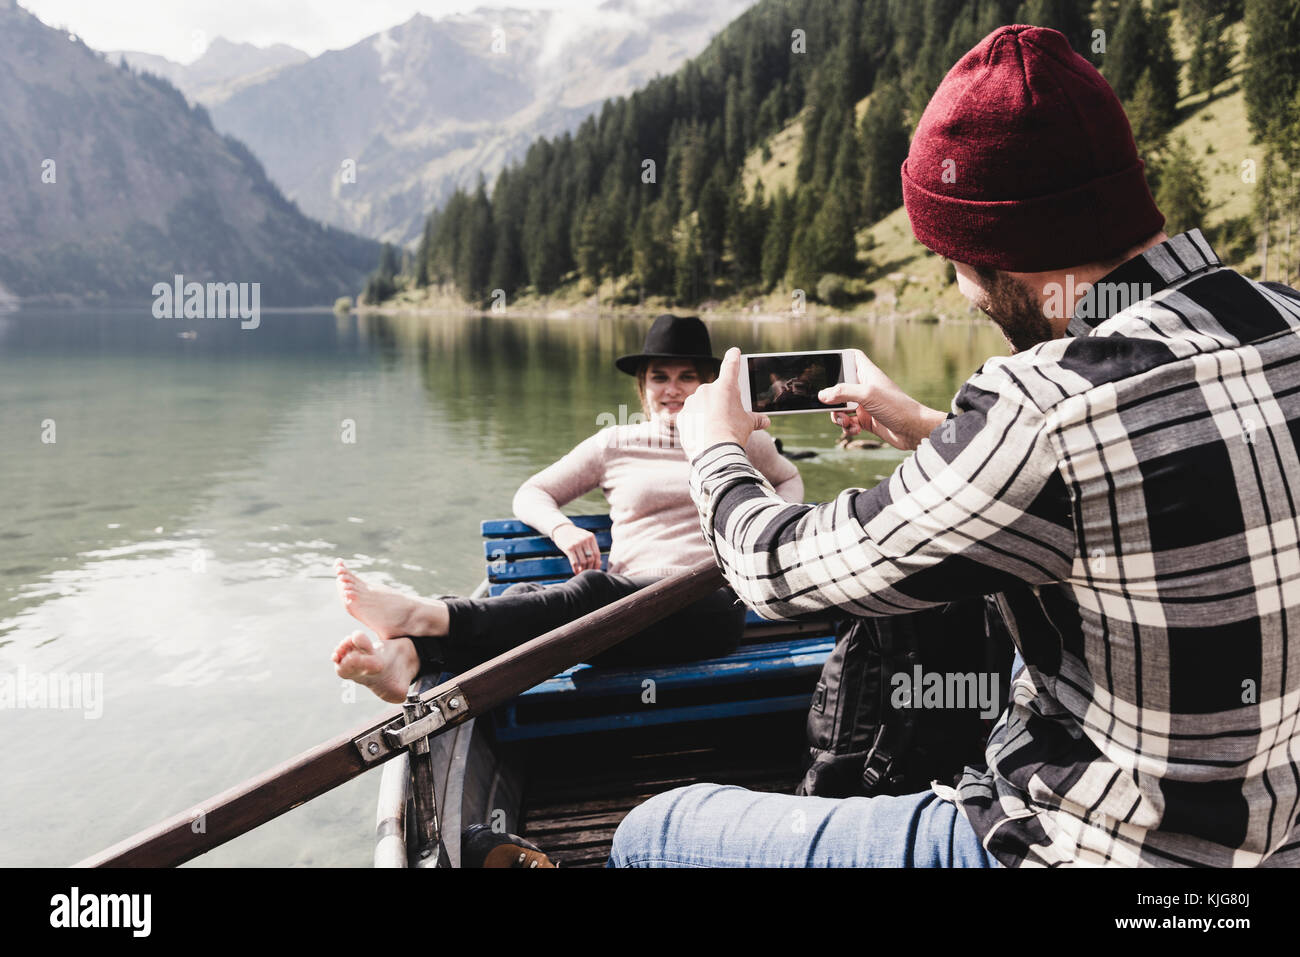 Österreich, Tirol, Alpen, Mann mit Handy Bild der Frau im Boot auf dem See Stockfoto